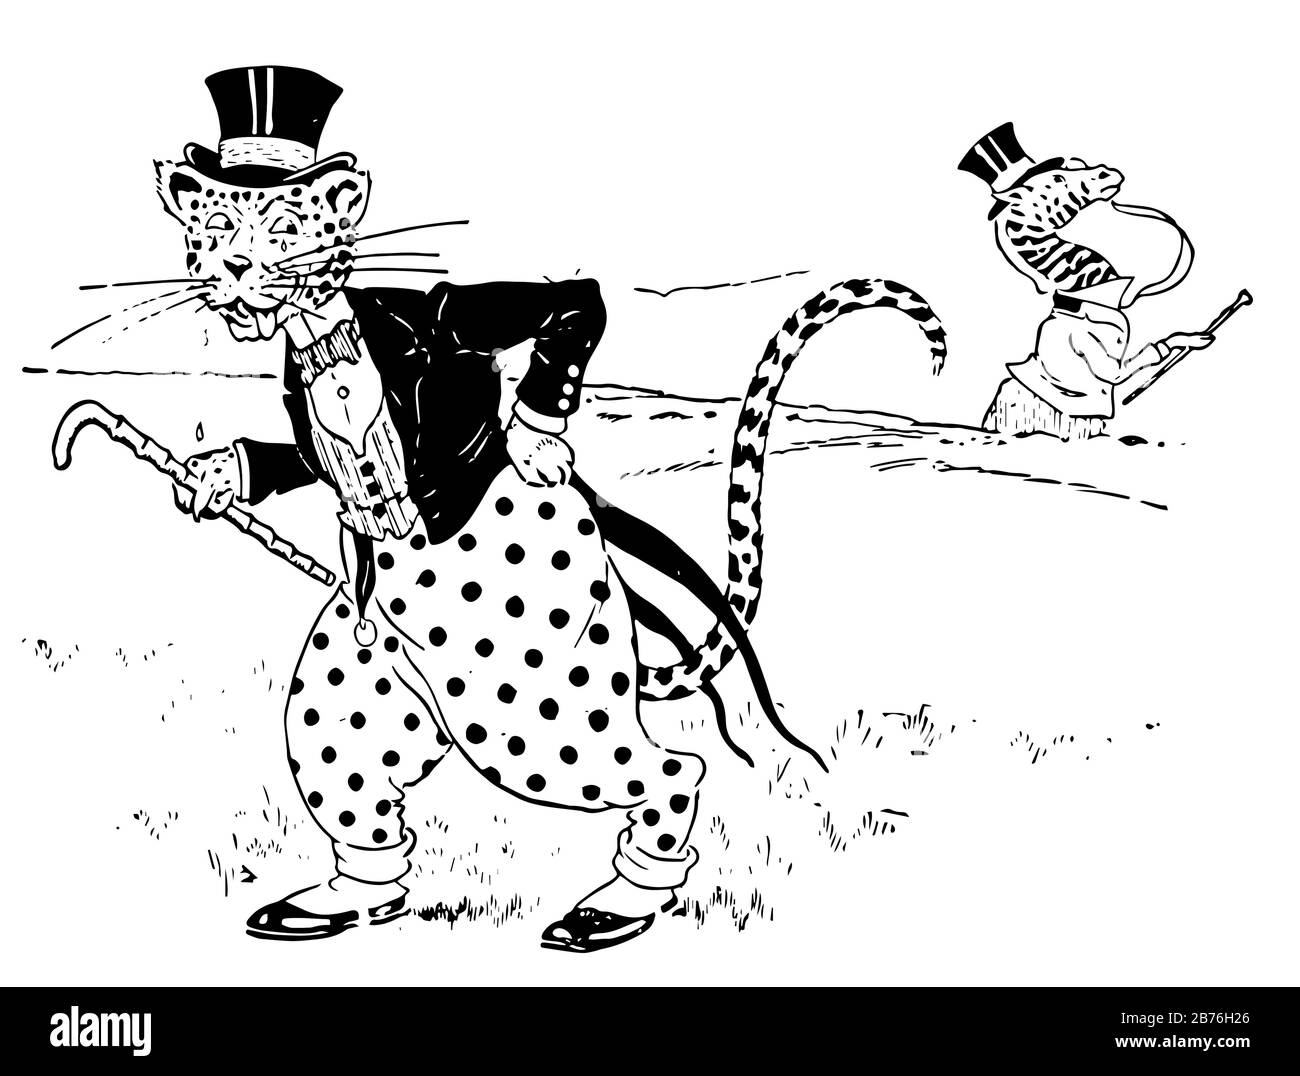 Léopard, deux animaux habillés et debout et larmes tombant des yeux d'animaux, dessin vintage ou gravure illustration Illustration de Vecteur